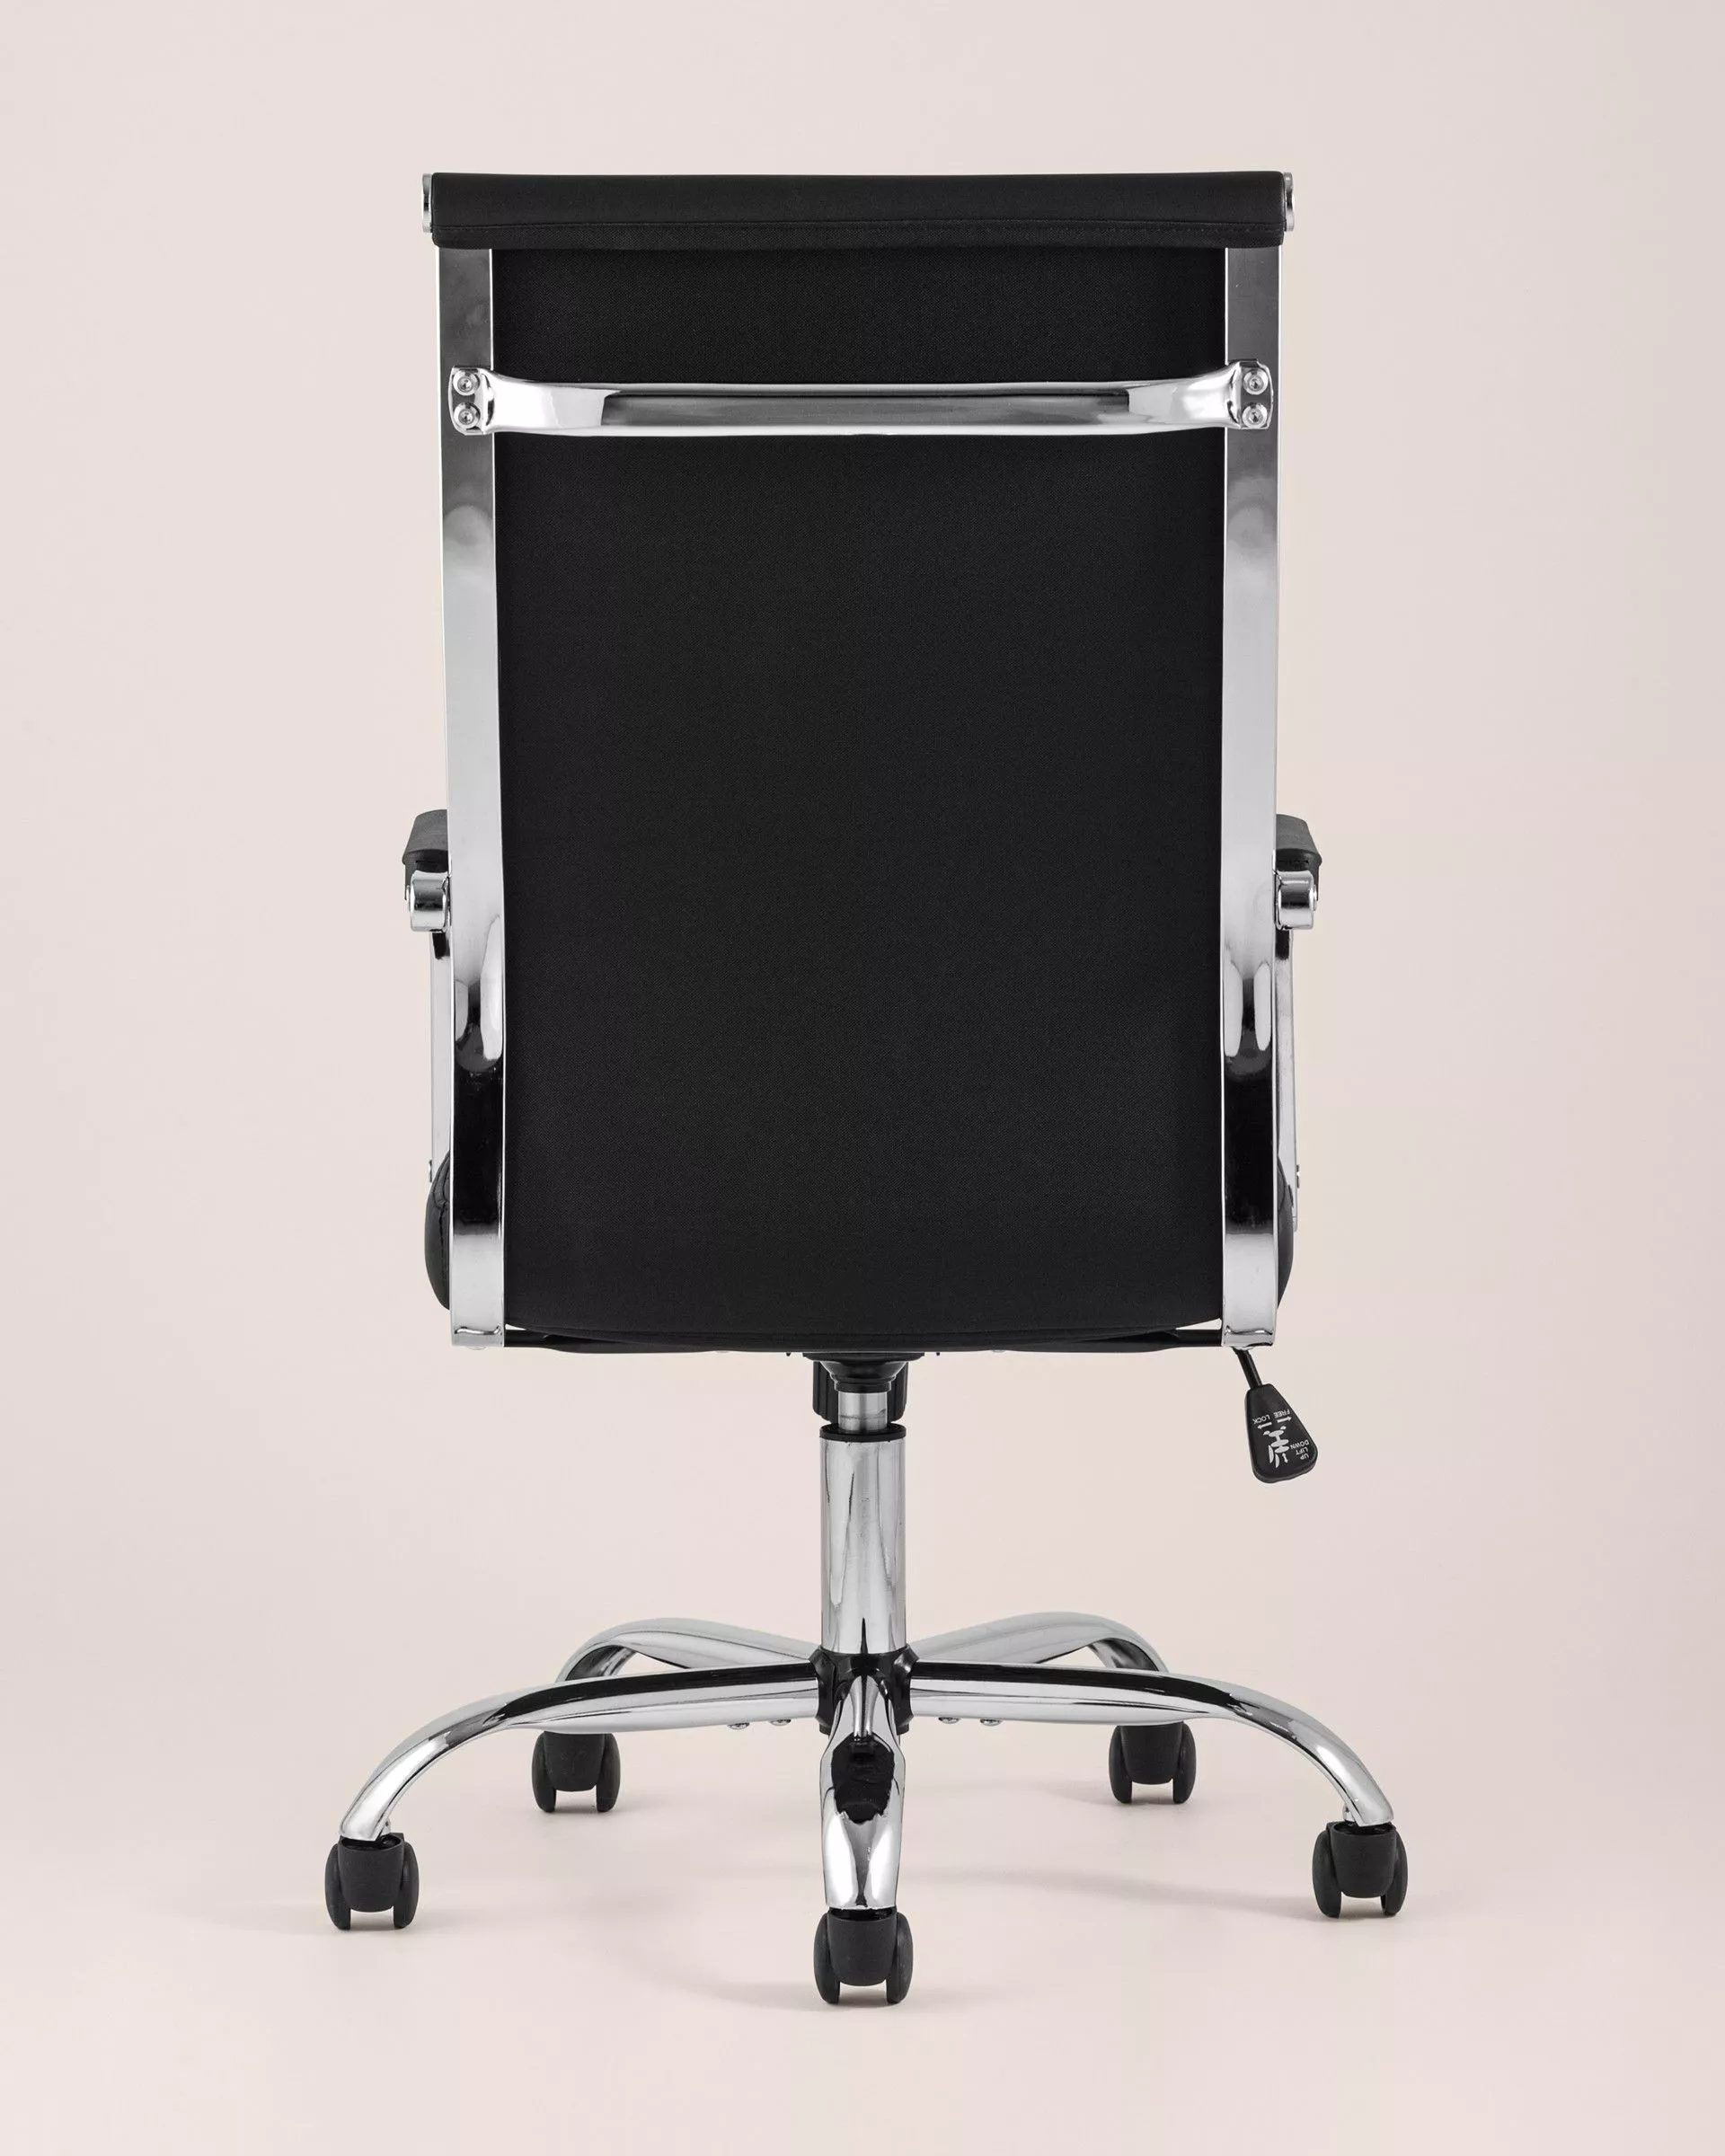 Кресло офисное TopChairs Unit черная экокожа хром